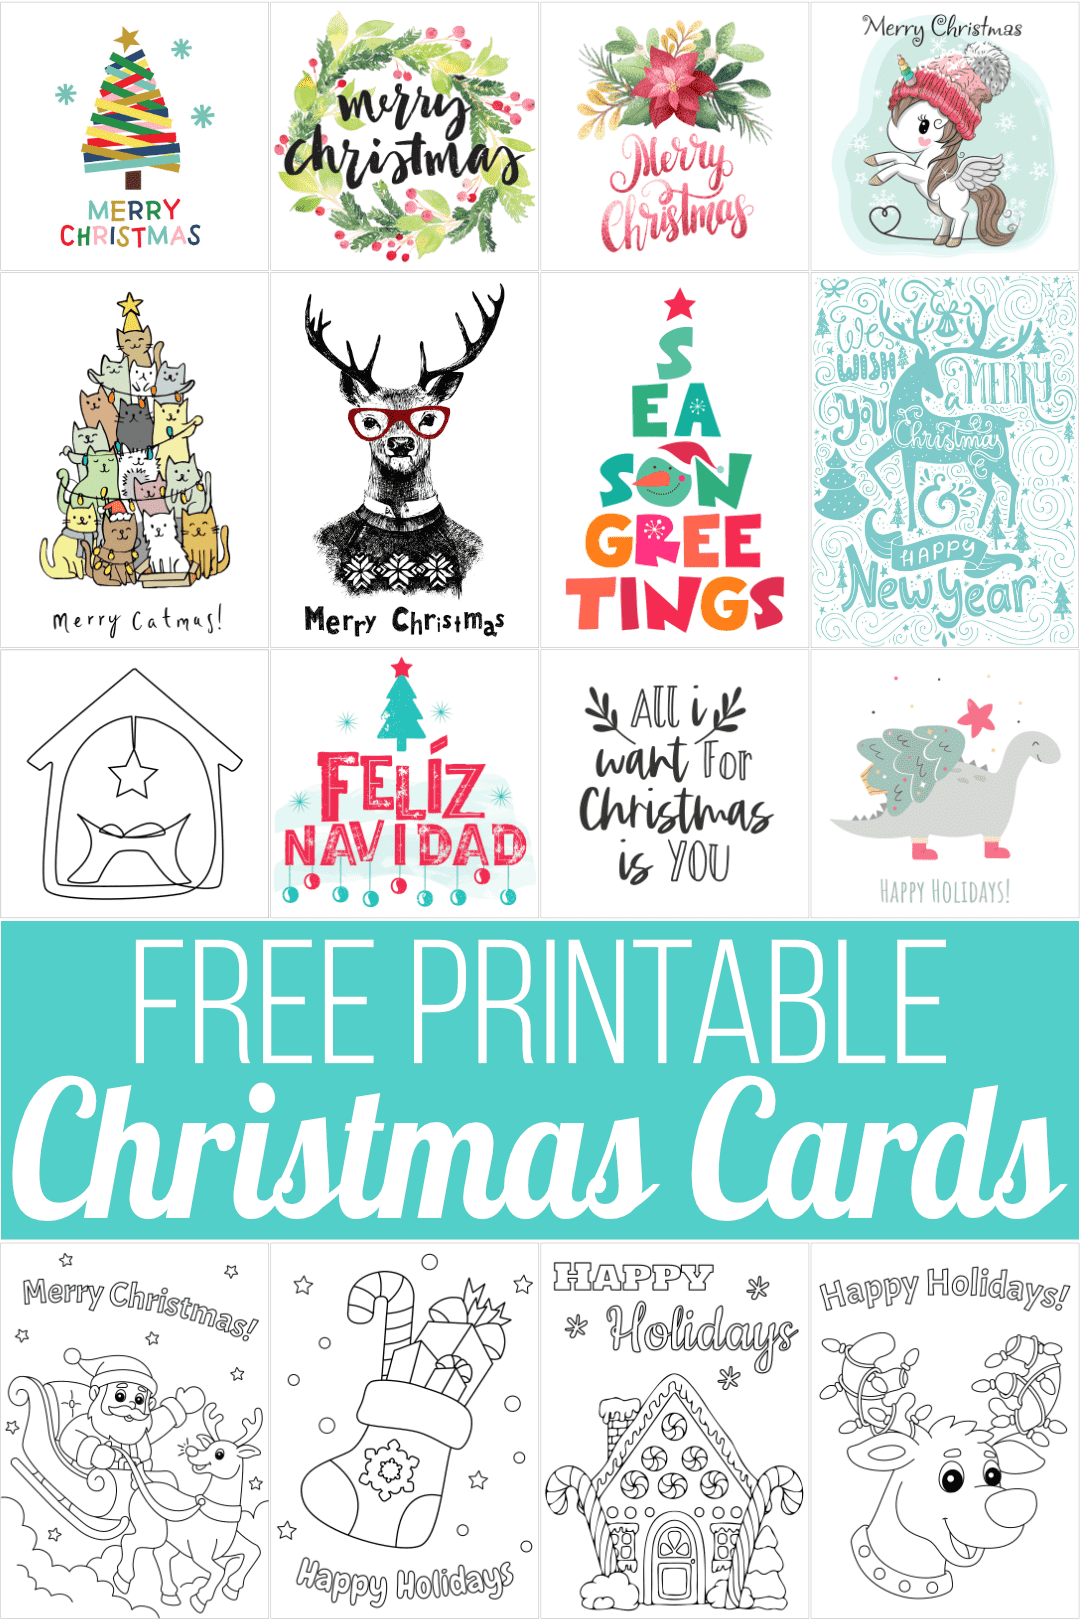 Free Printable Editable Christmas Cards FREE PRINTABLE TEMPLATES